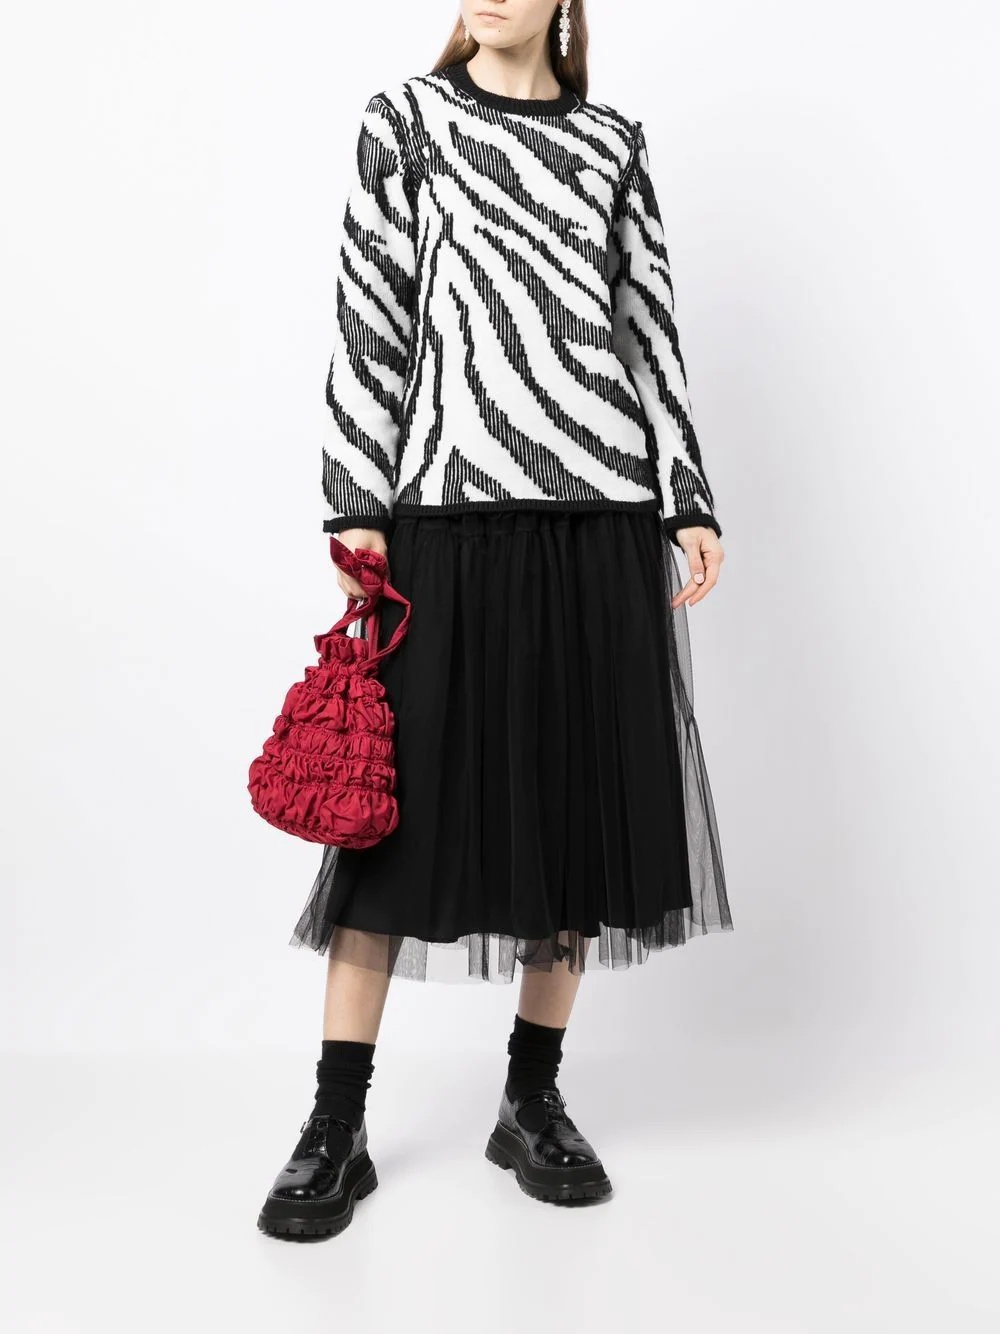 intarsia-knit zebra pattern jumper - 2